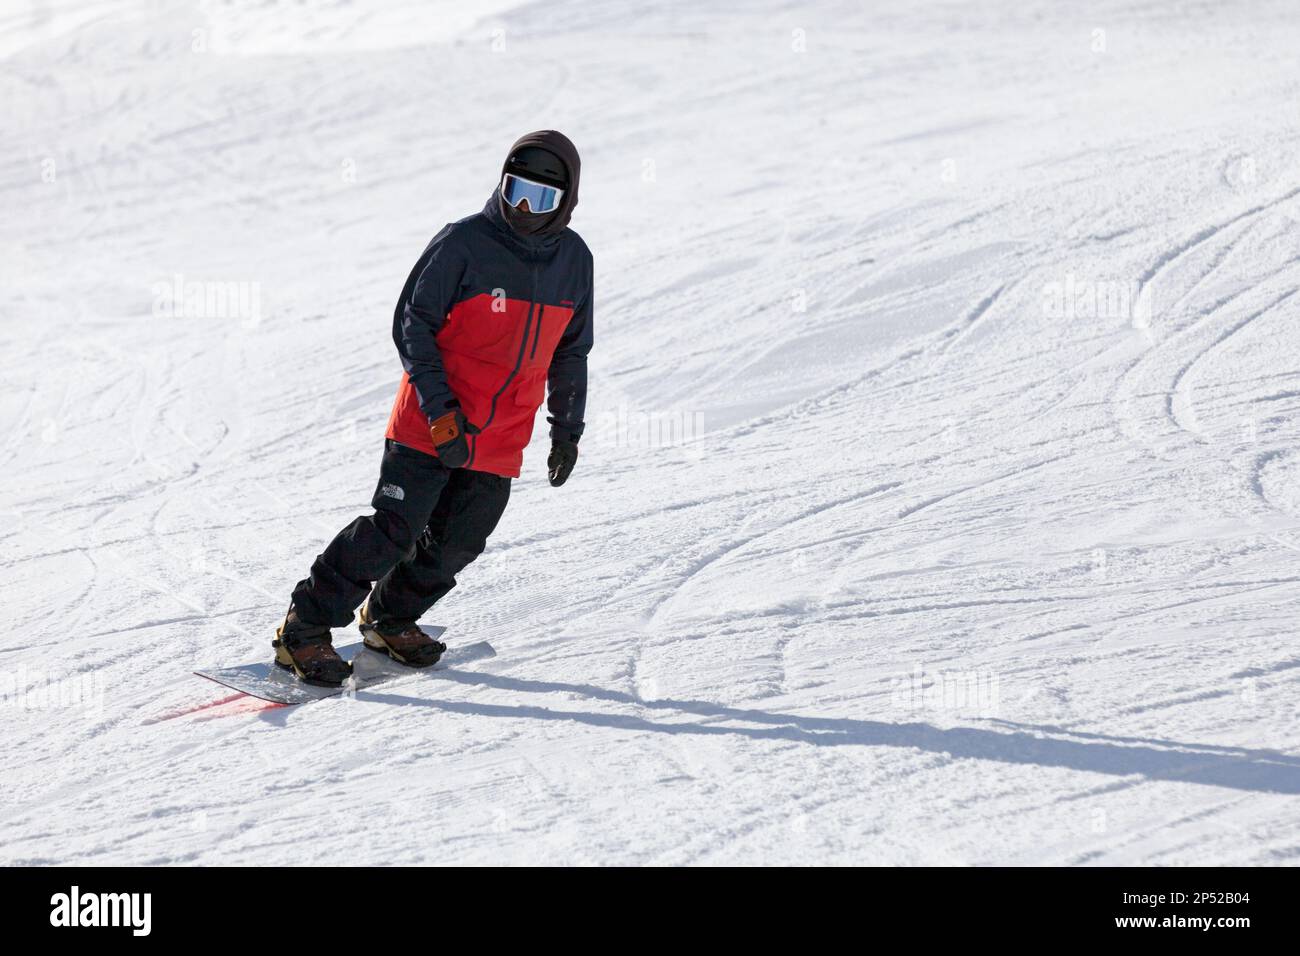 Pas de la Casa, Andorra, 02 2019 dicembre: Uno snowboarder sulla pista sciistica di Grandvalira, la più grande stazione sciistica dei Pirenei e del sud Europa. Foto Stock